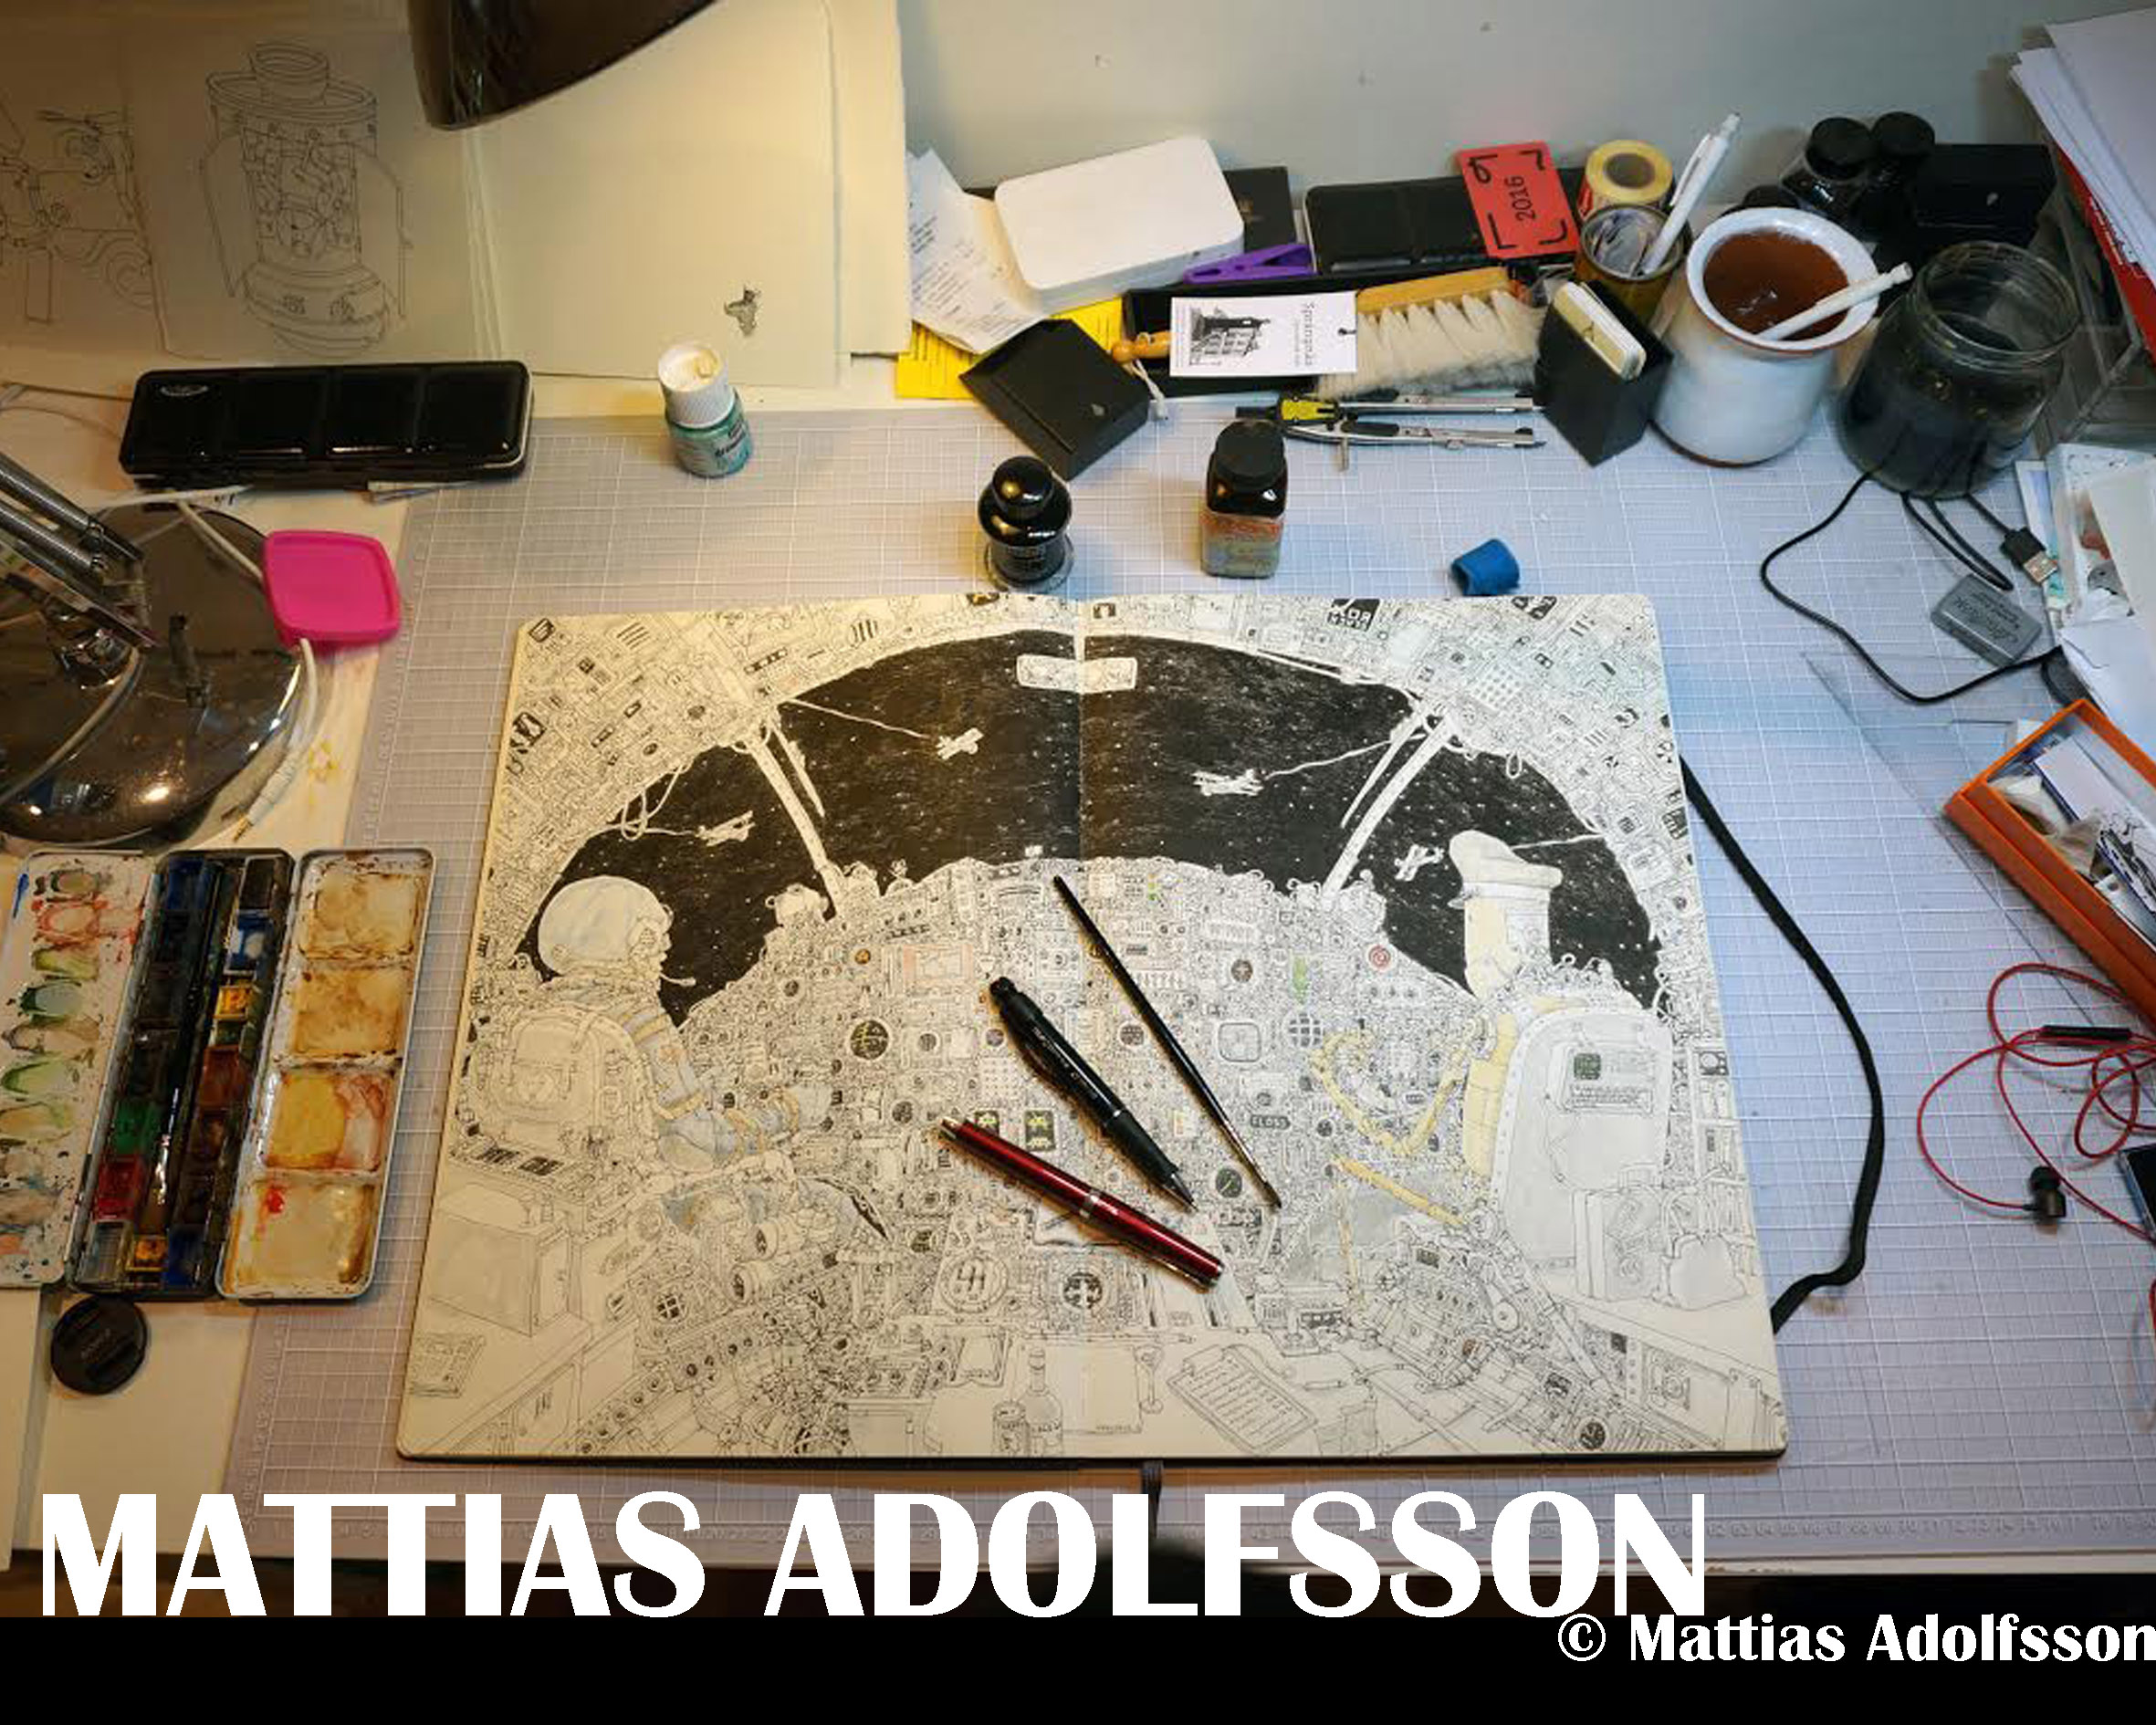 Mattias Adolfsson